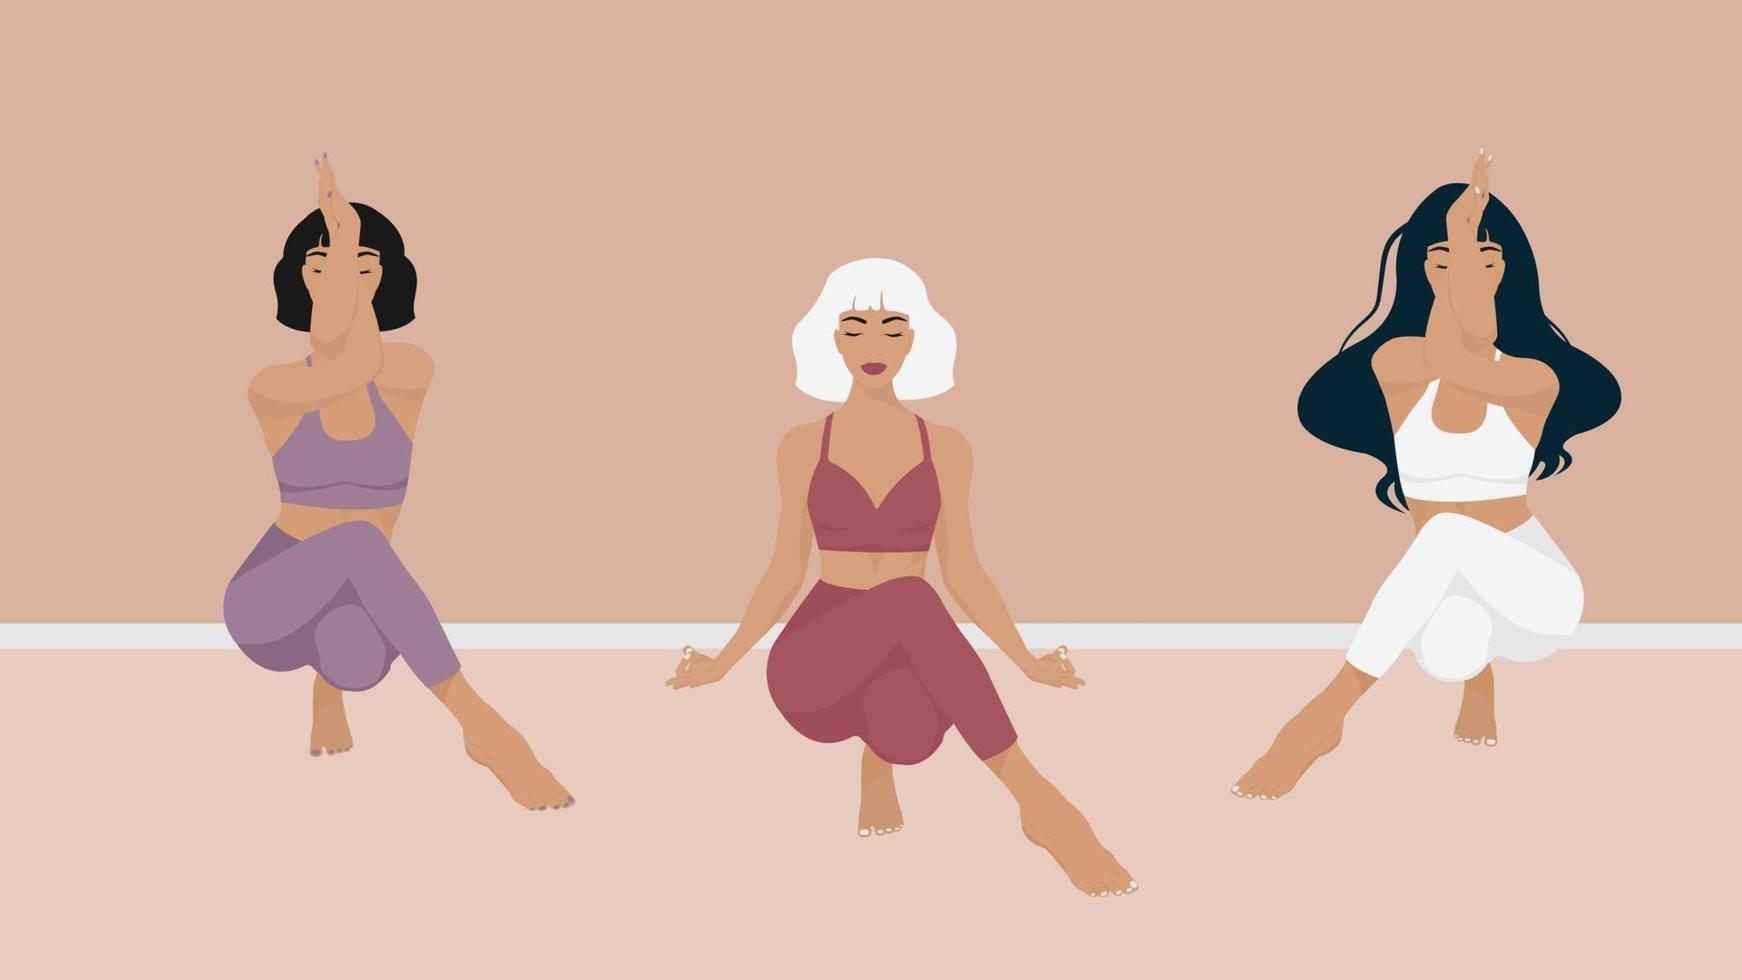 mindfulness, meditation och yogabakgrund i pastellfärger vintage med kvinnor som sitter med korsade ben och mediterar. vektor illustration